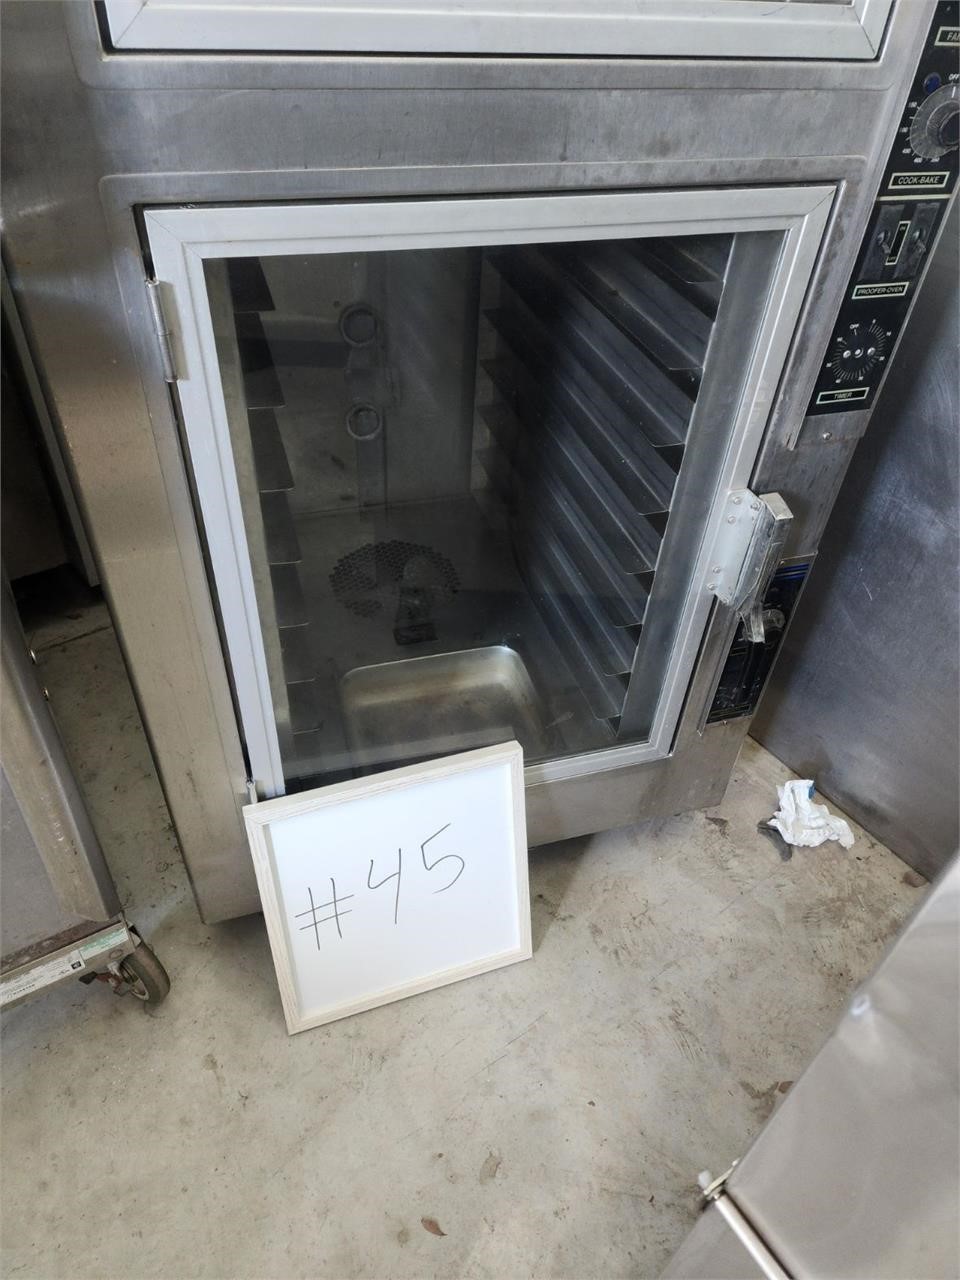 NU-VU warmer/oven